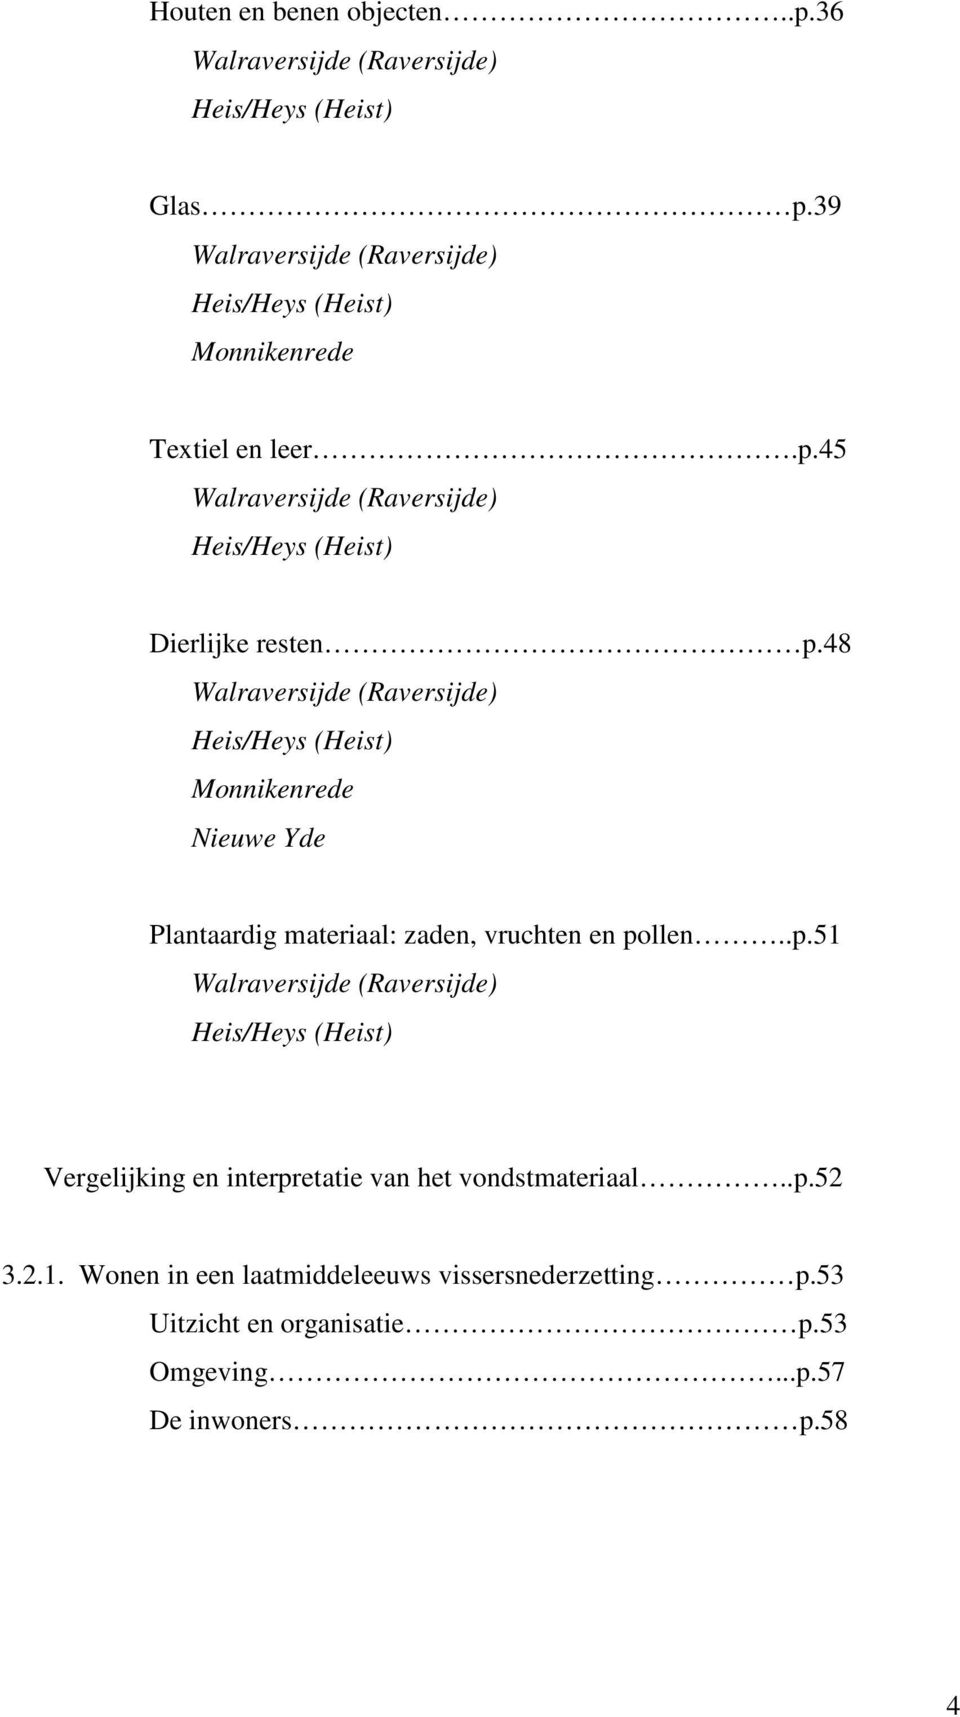 48 Walraversijde (Raversijde) Heis/Heys (Heist) Monnikenrede Nieuwe Yde Plantaardig materiaal: zaden, vruchten en po